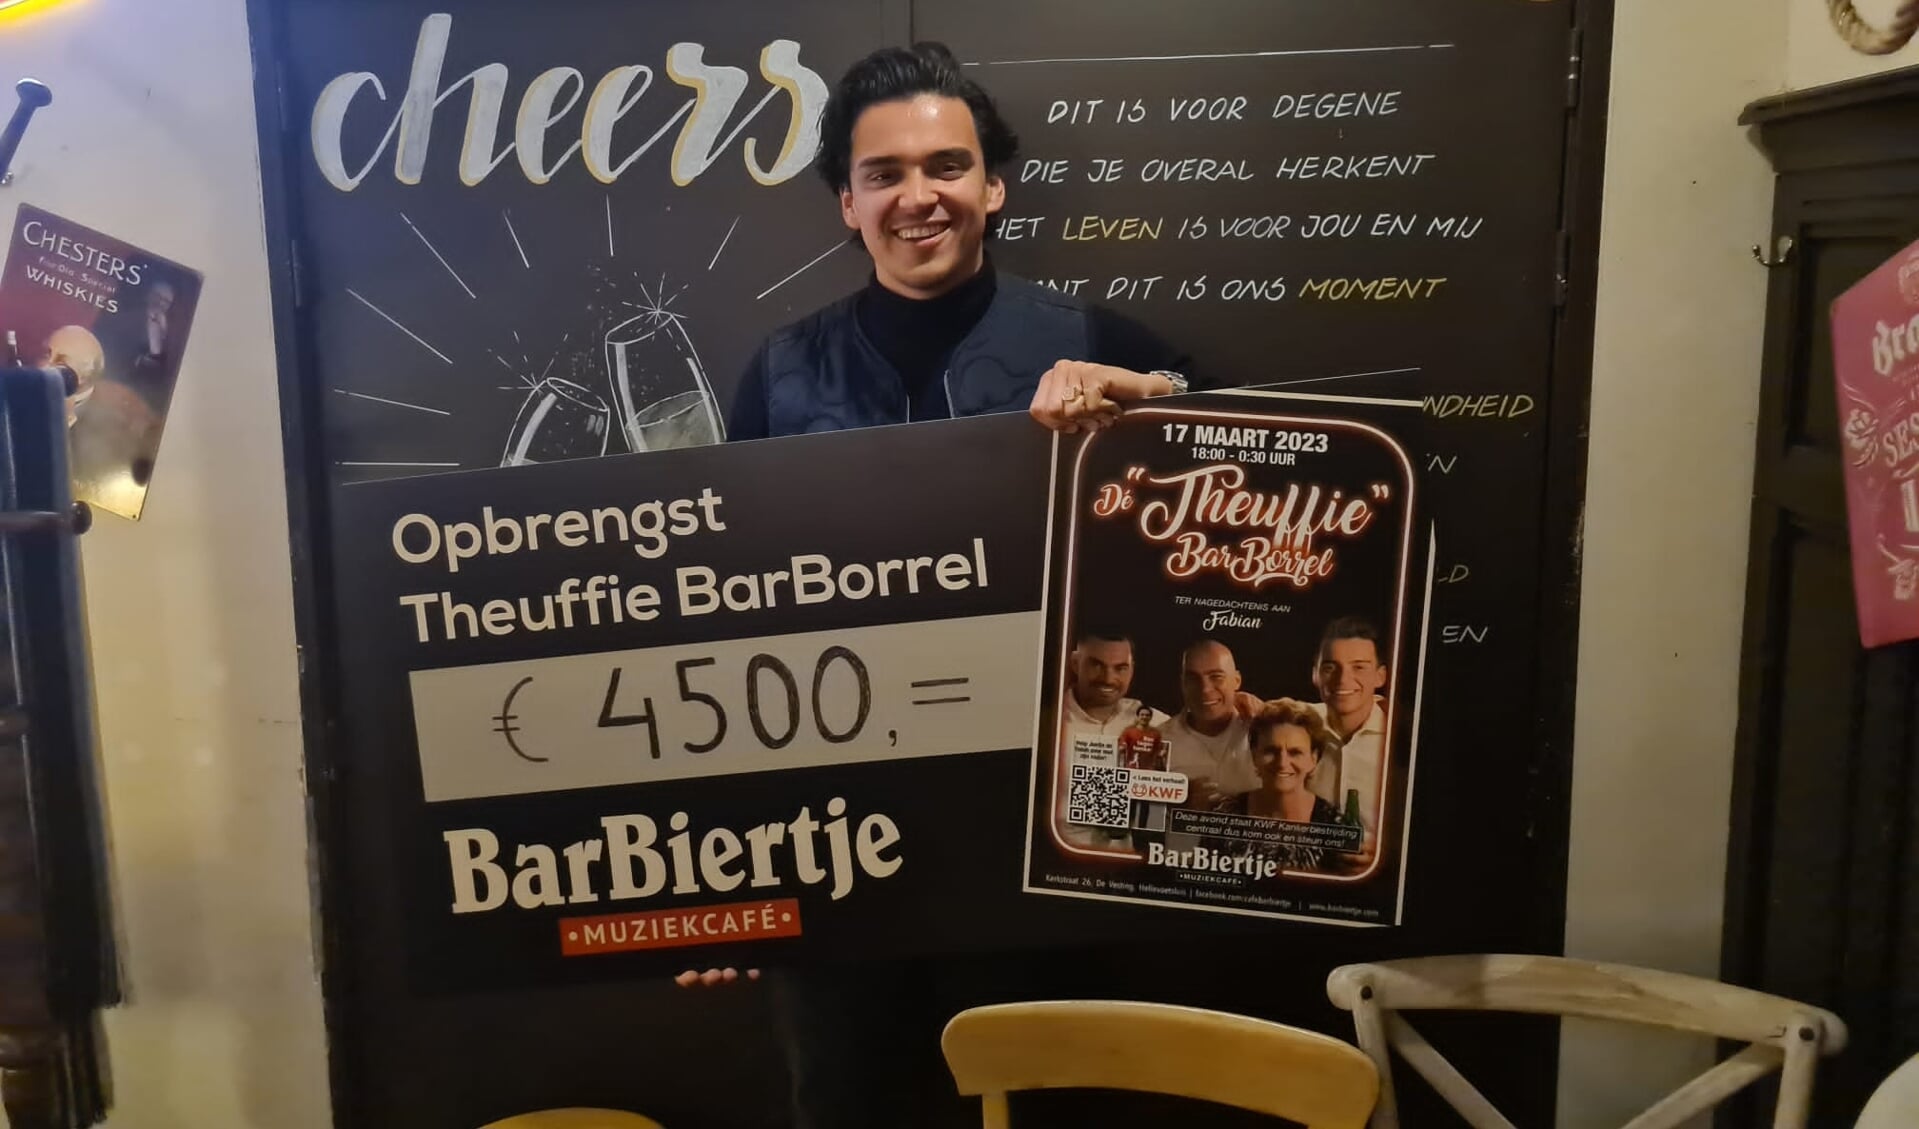 Vrijdag 17 maart organiseerde Justin Theuvenet in samenwerking met Barbiertje de Theuffie BarBorrel. De avond werd georganiseerd ter nagedachtenis aan zijn vader, maar natuurlijk ook om geld in te zamelen.